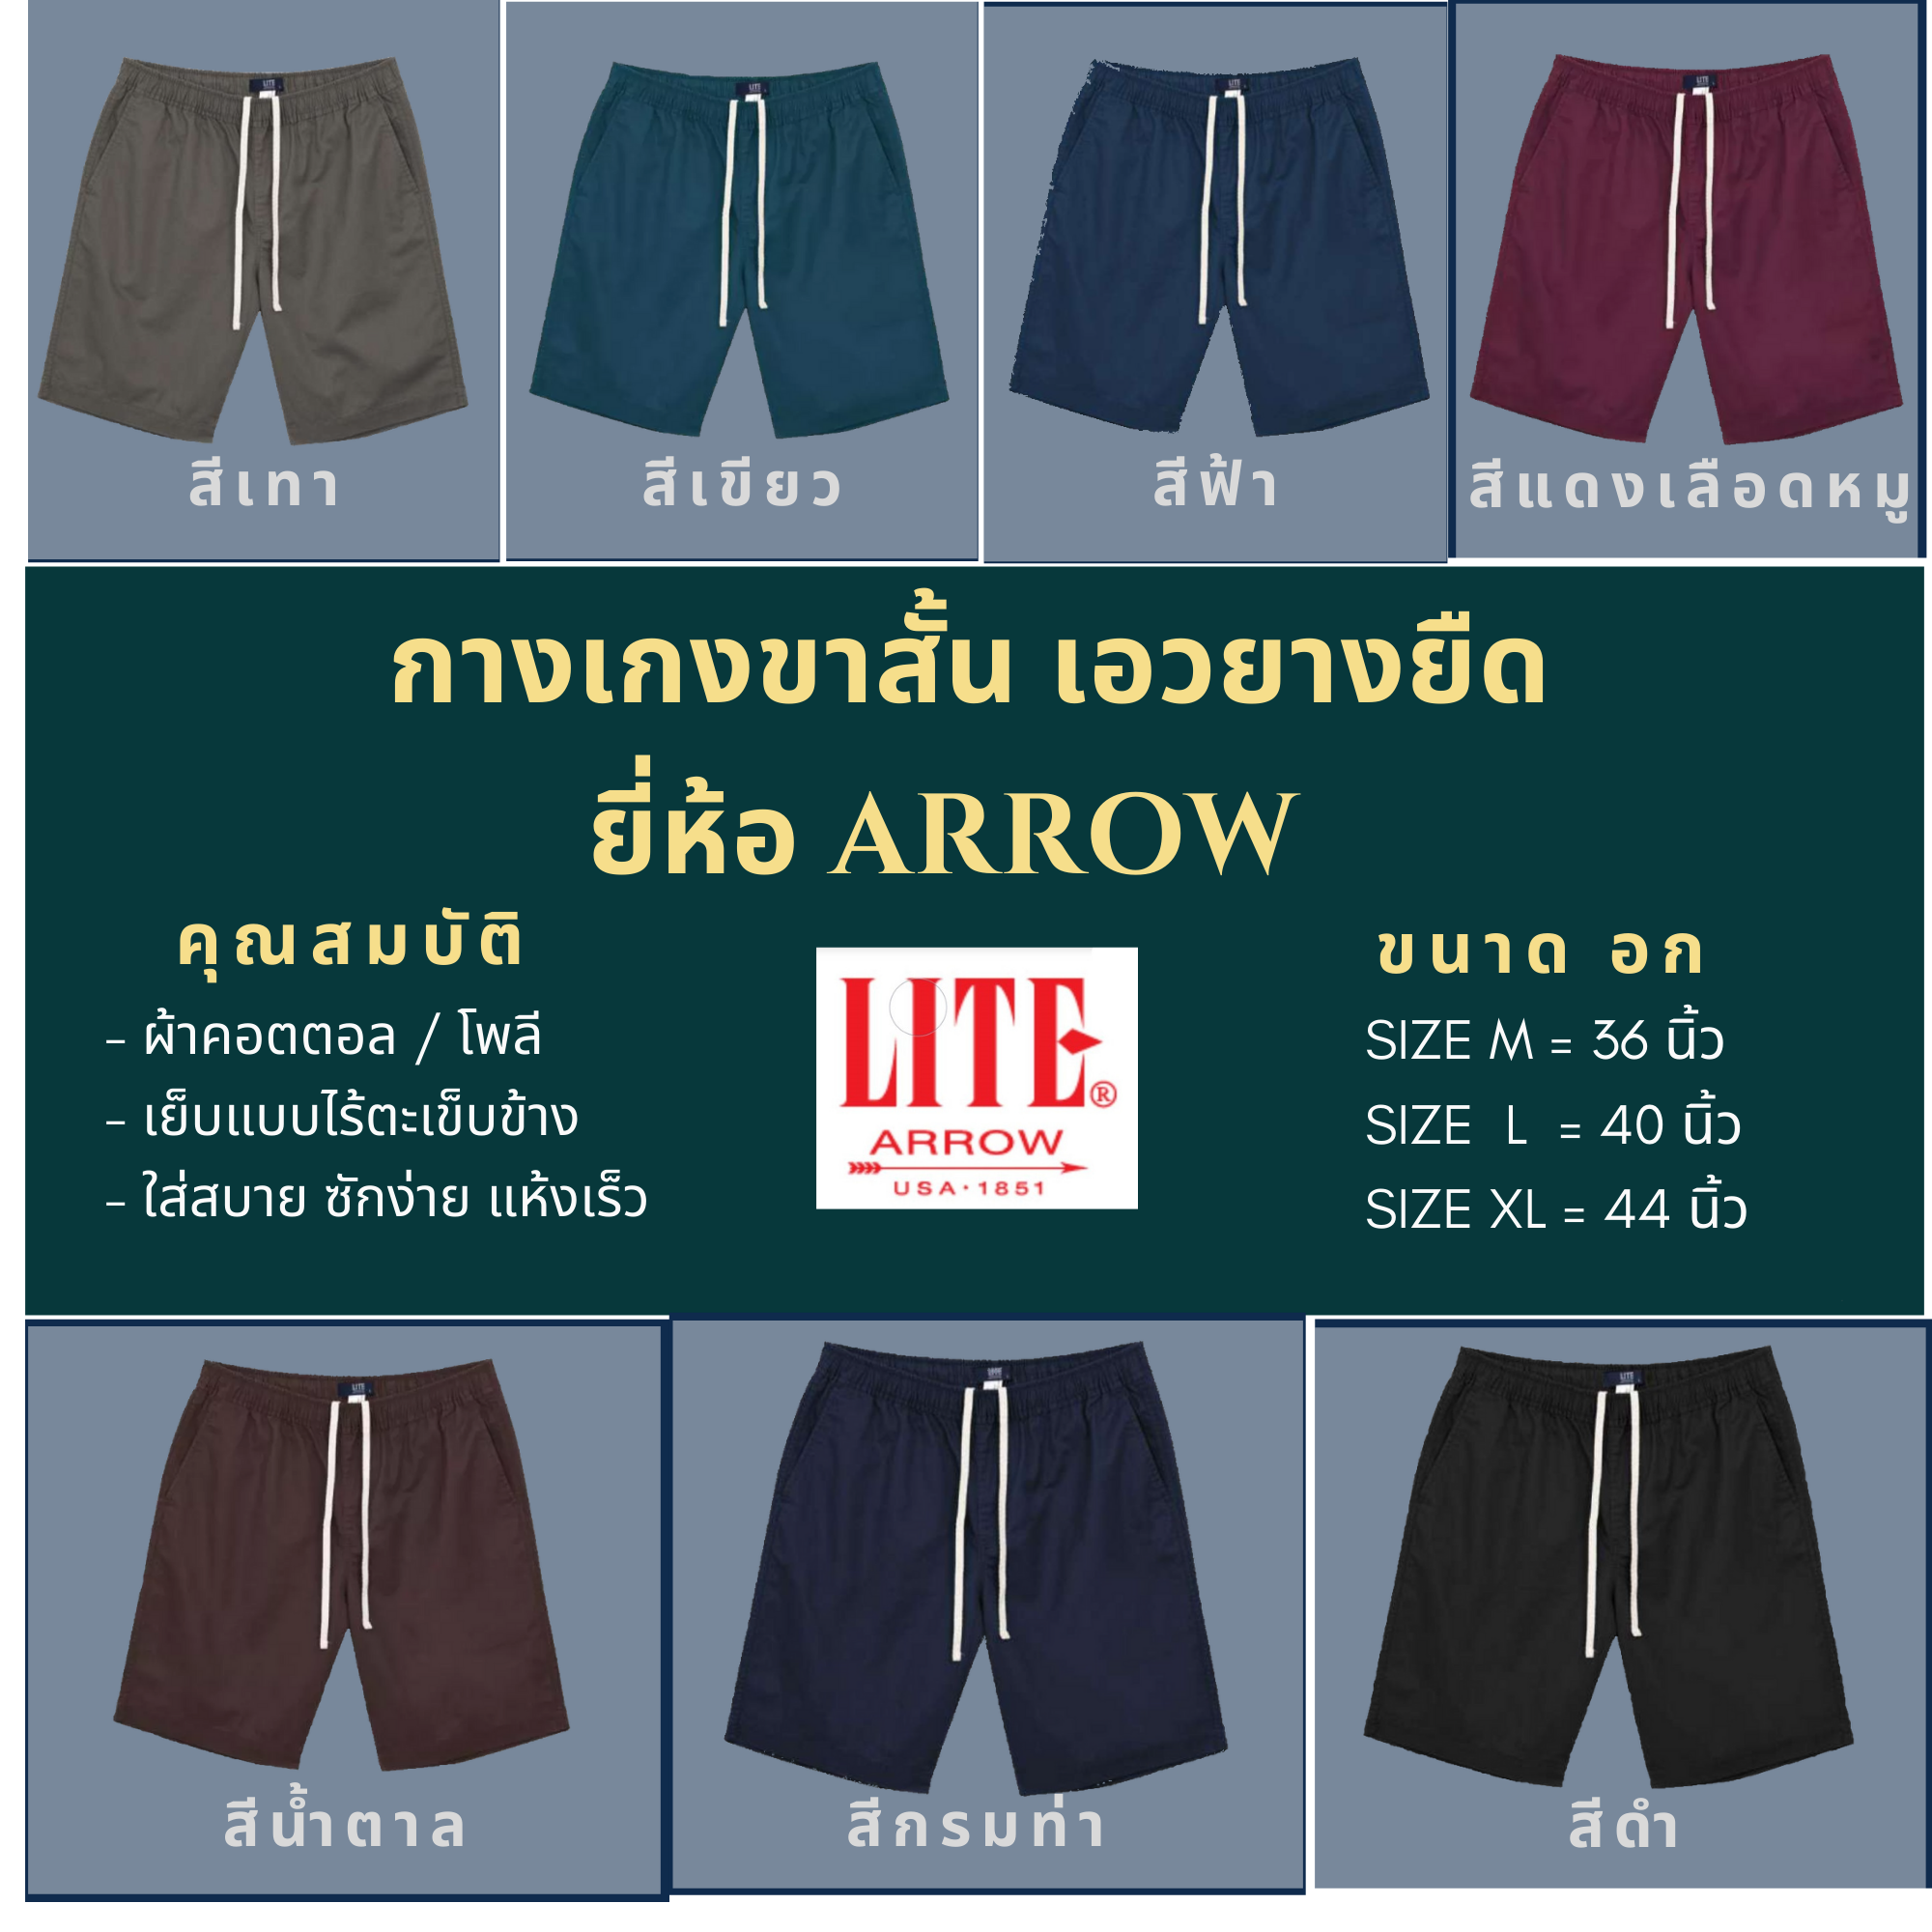 ARROW LITE กางเกงขาสั้นเอวยางยืด มี 7 สีให้เลือก